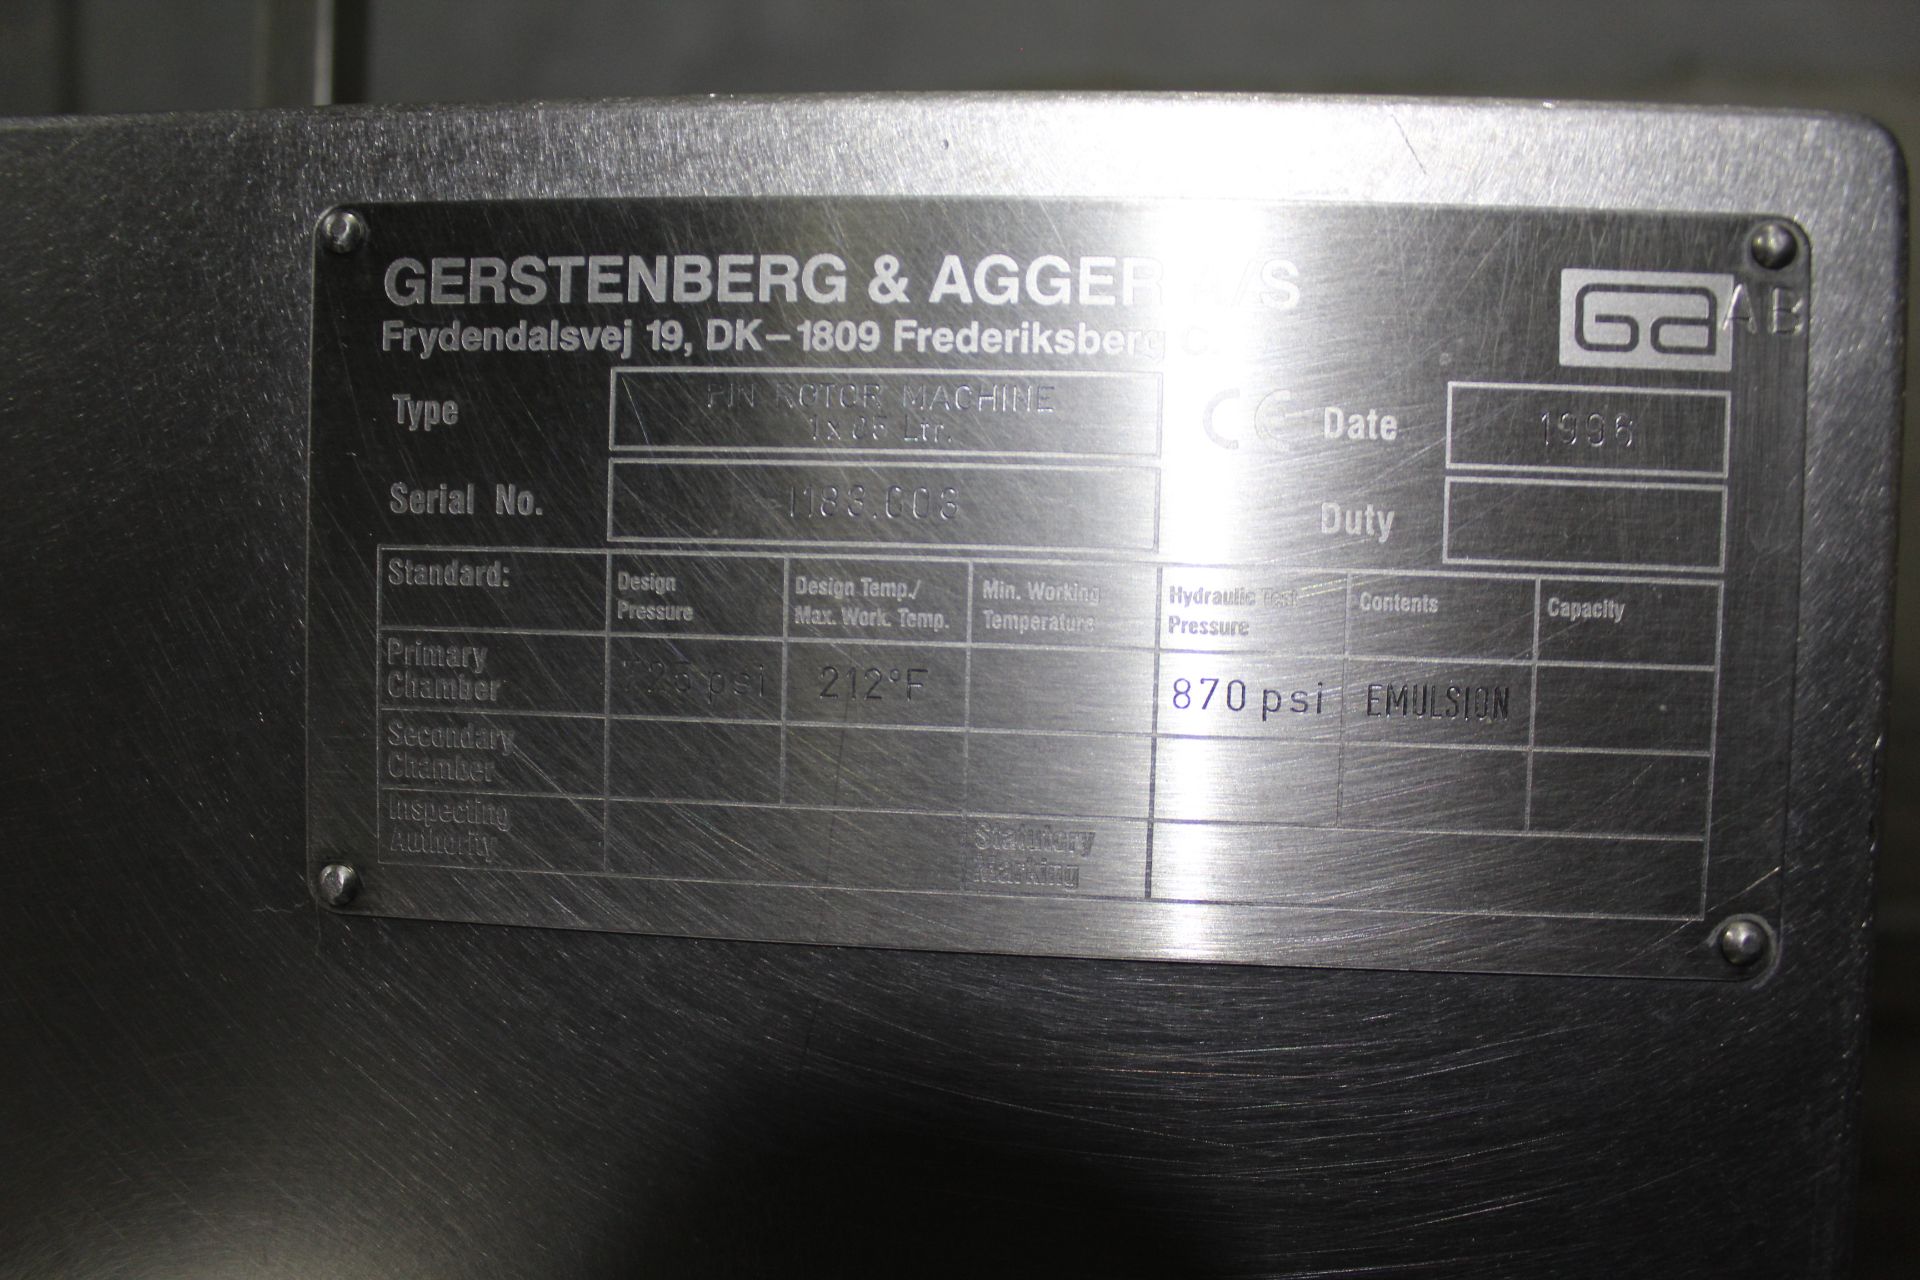 Gerstenberg & Aggers Pin Rotor Machine, Type 1 X 85 Ltr., S/N 1183.003 - Bild 2 aus 2